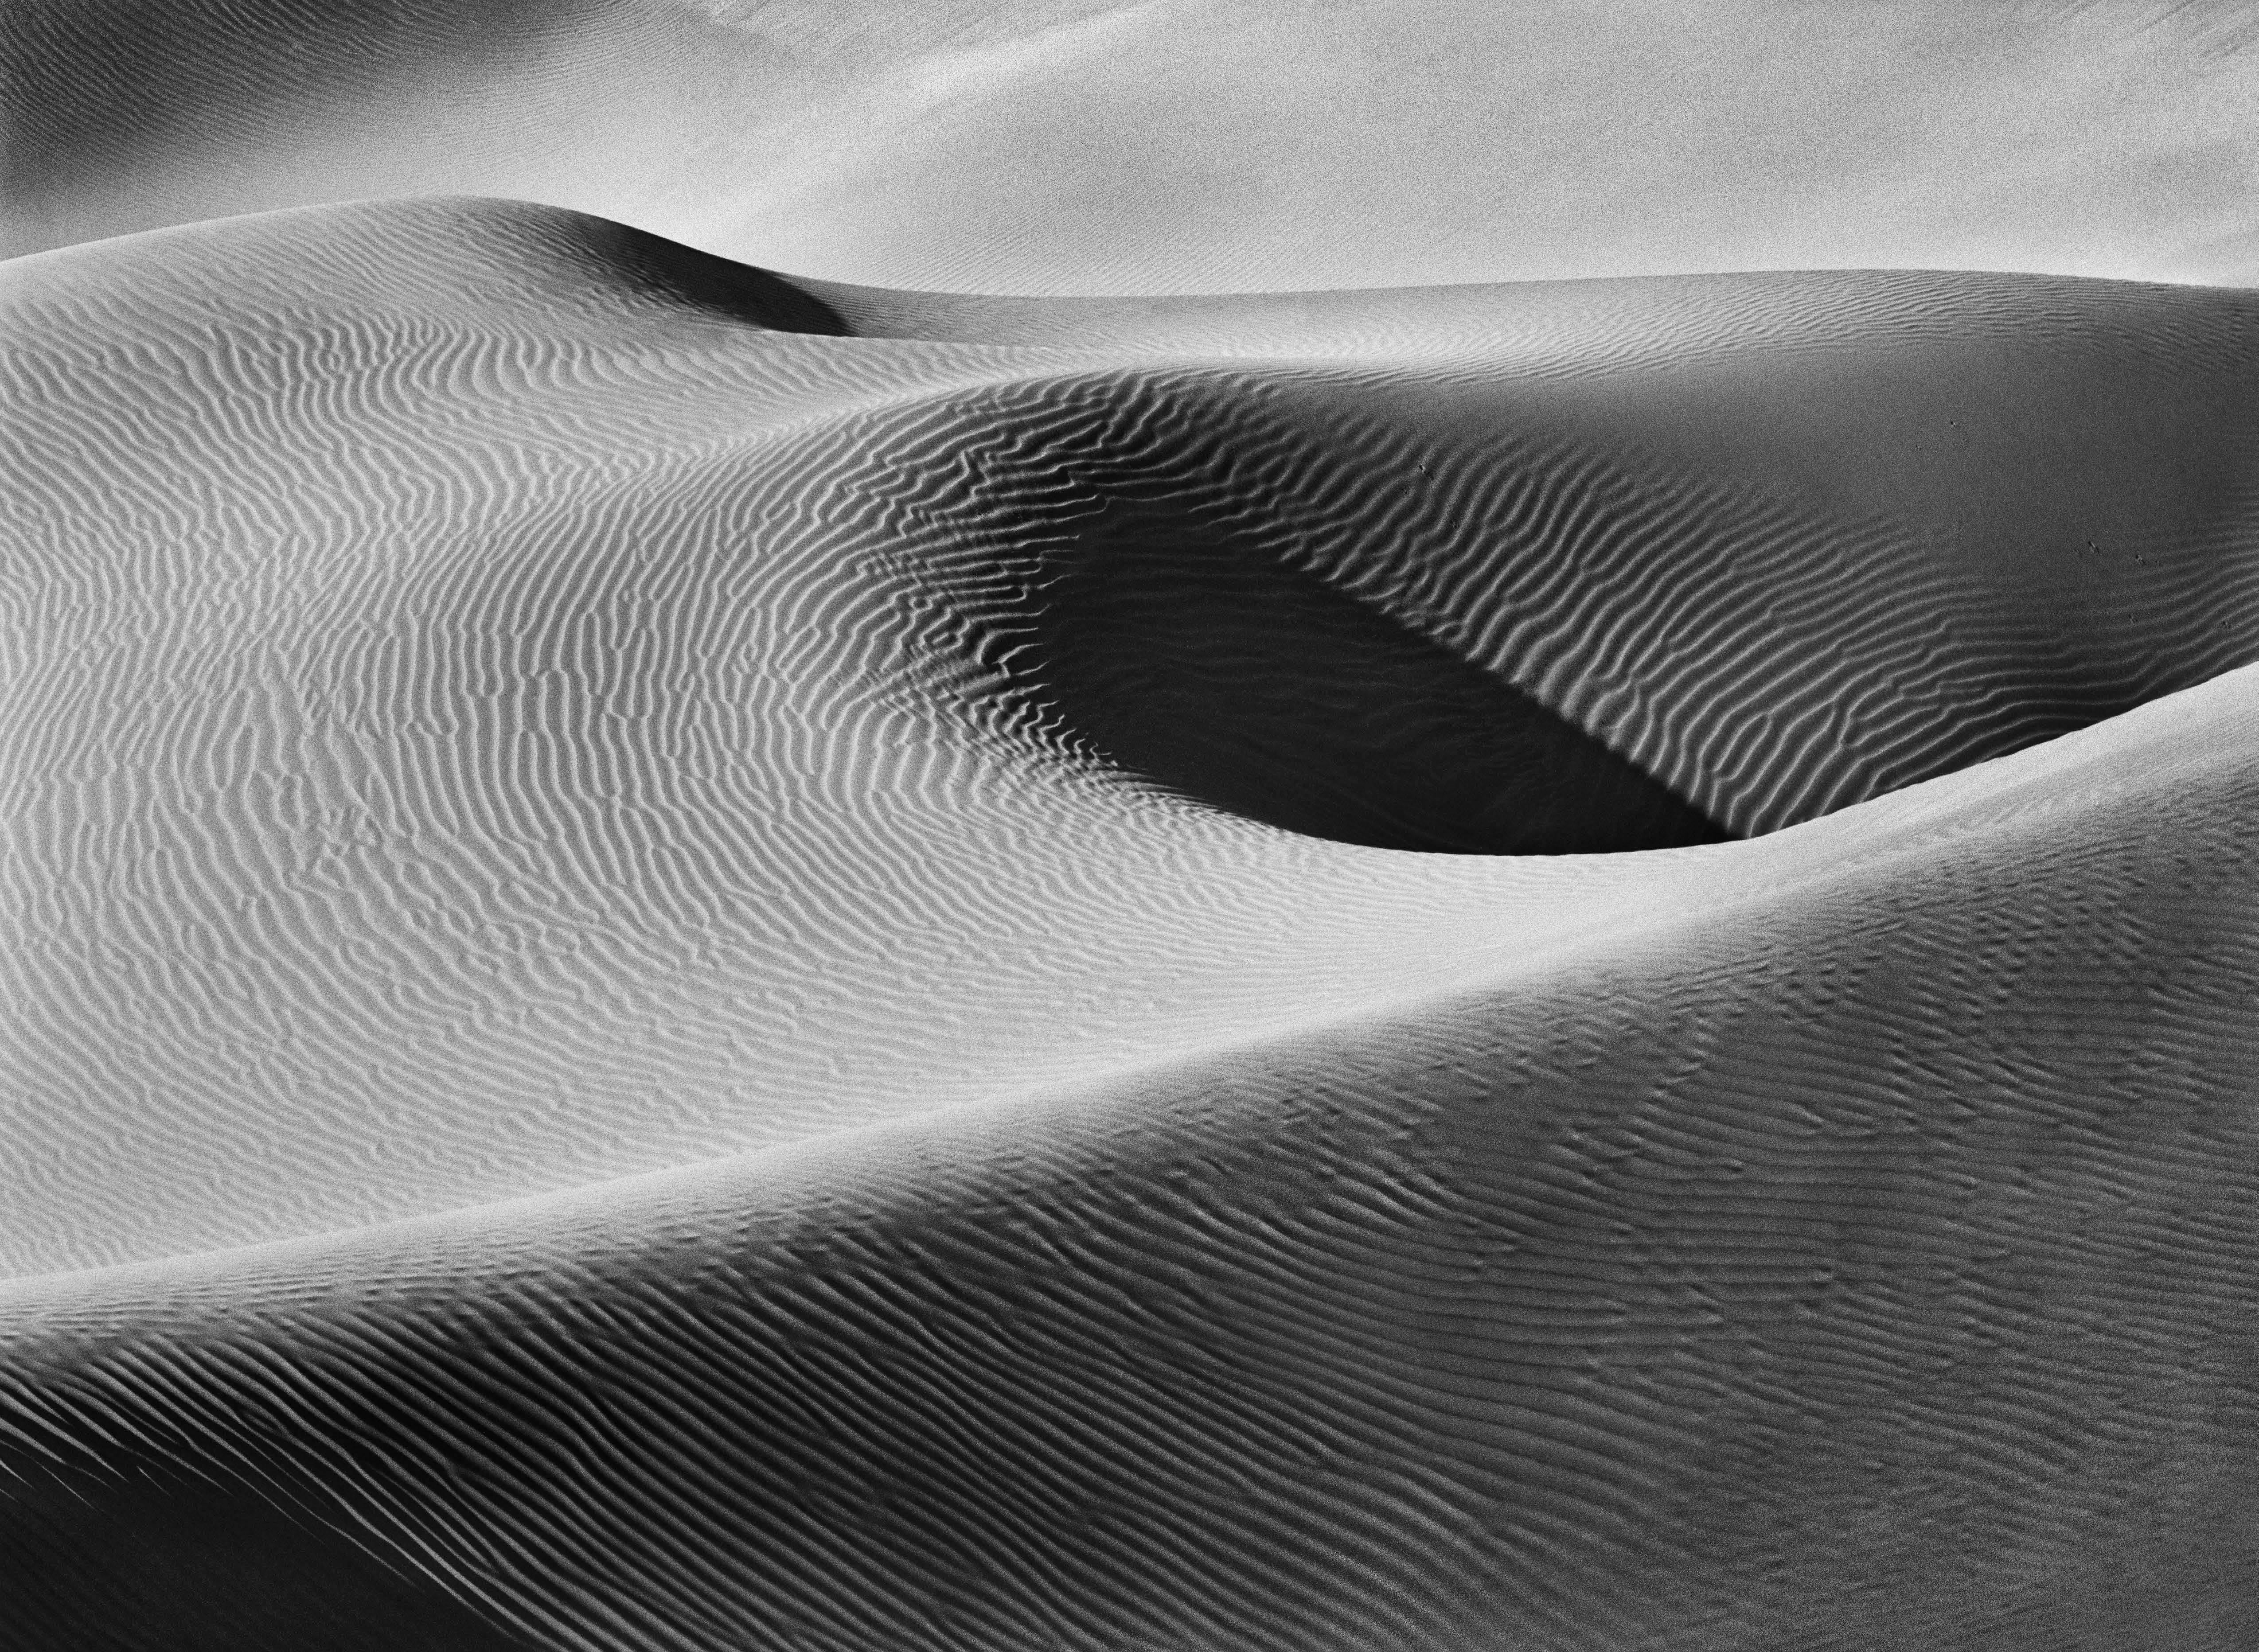 Sanddünen, Namib-Naukluft-Nationalpark, Namibia, 2005
Sebastião Salgado
Gestempelt mit dem Copyright-Blindstempel des Fotografen
Signiert, rückseitig beschriftet
Silber-Gelatine-Druck
16 x 20 Zoll

Auch in sechs weiteren Größen erhältlich, bitte